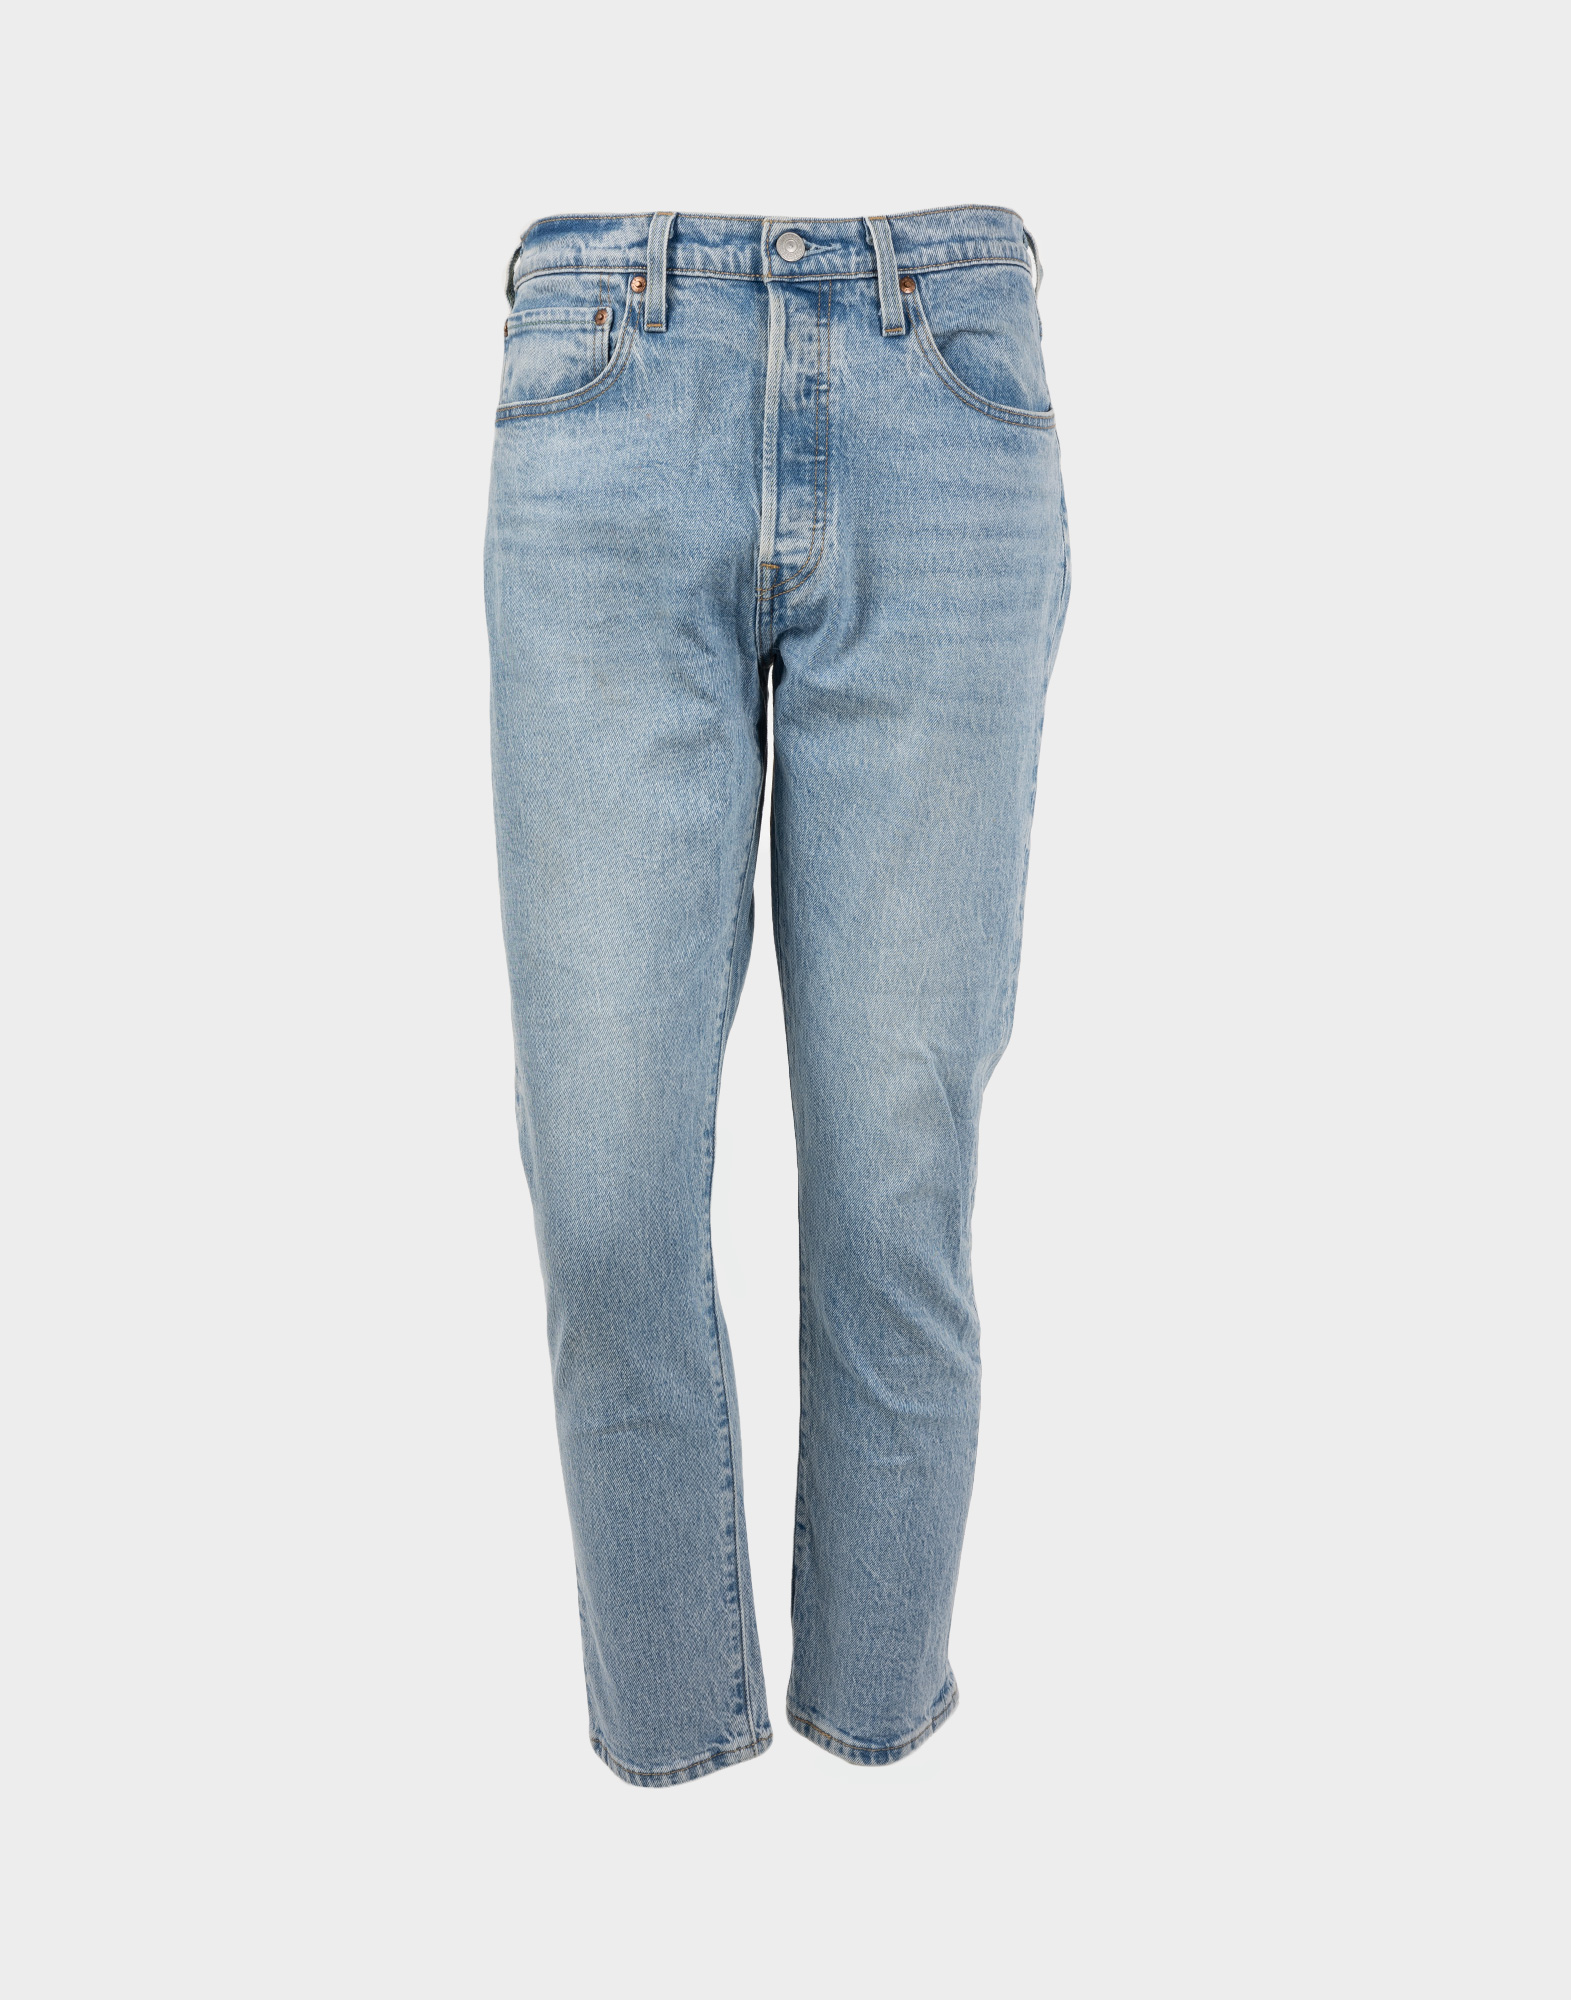 levis men's light wash jeans trousers model 501